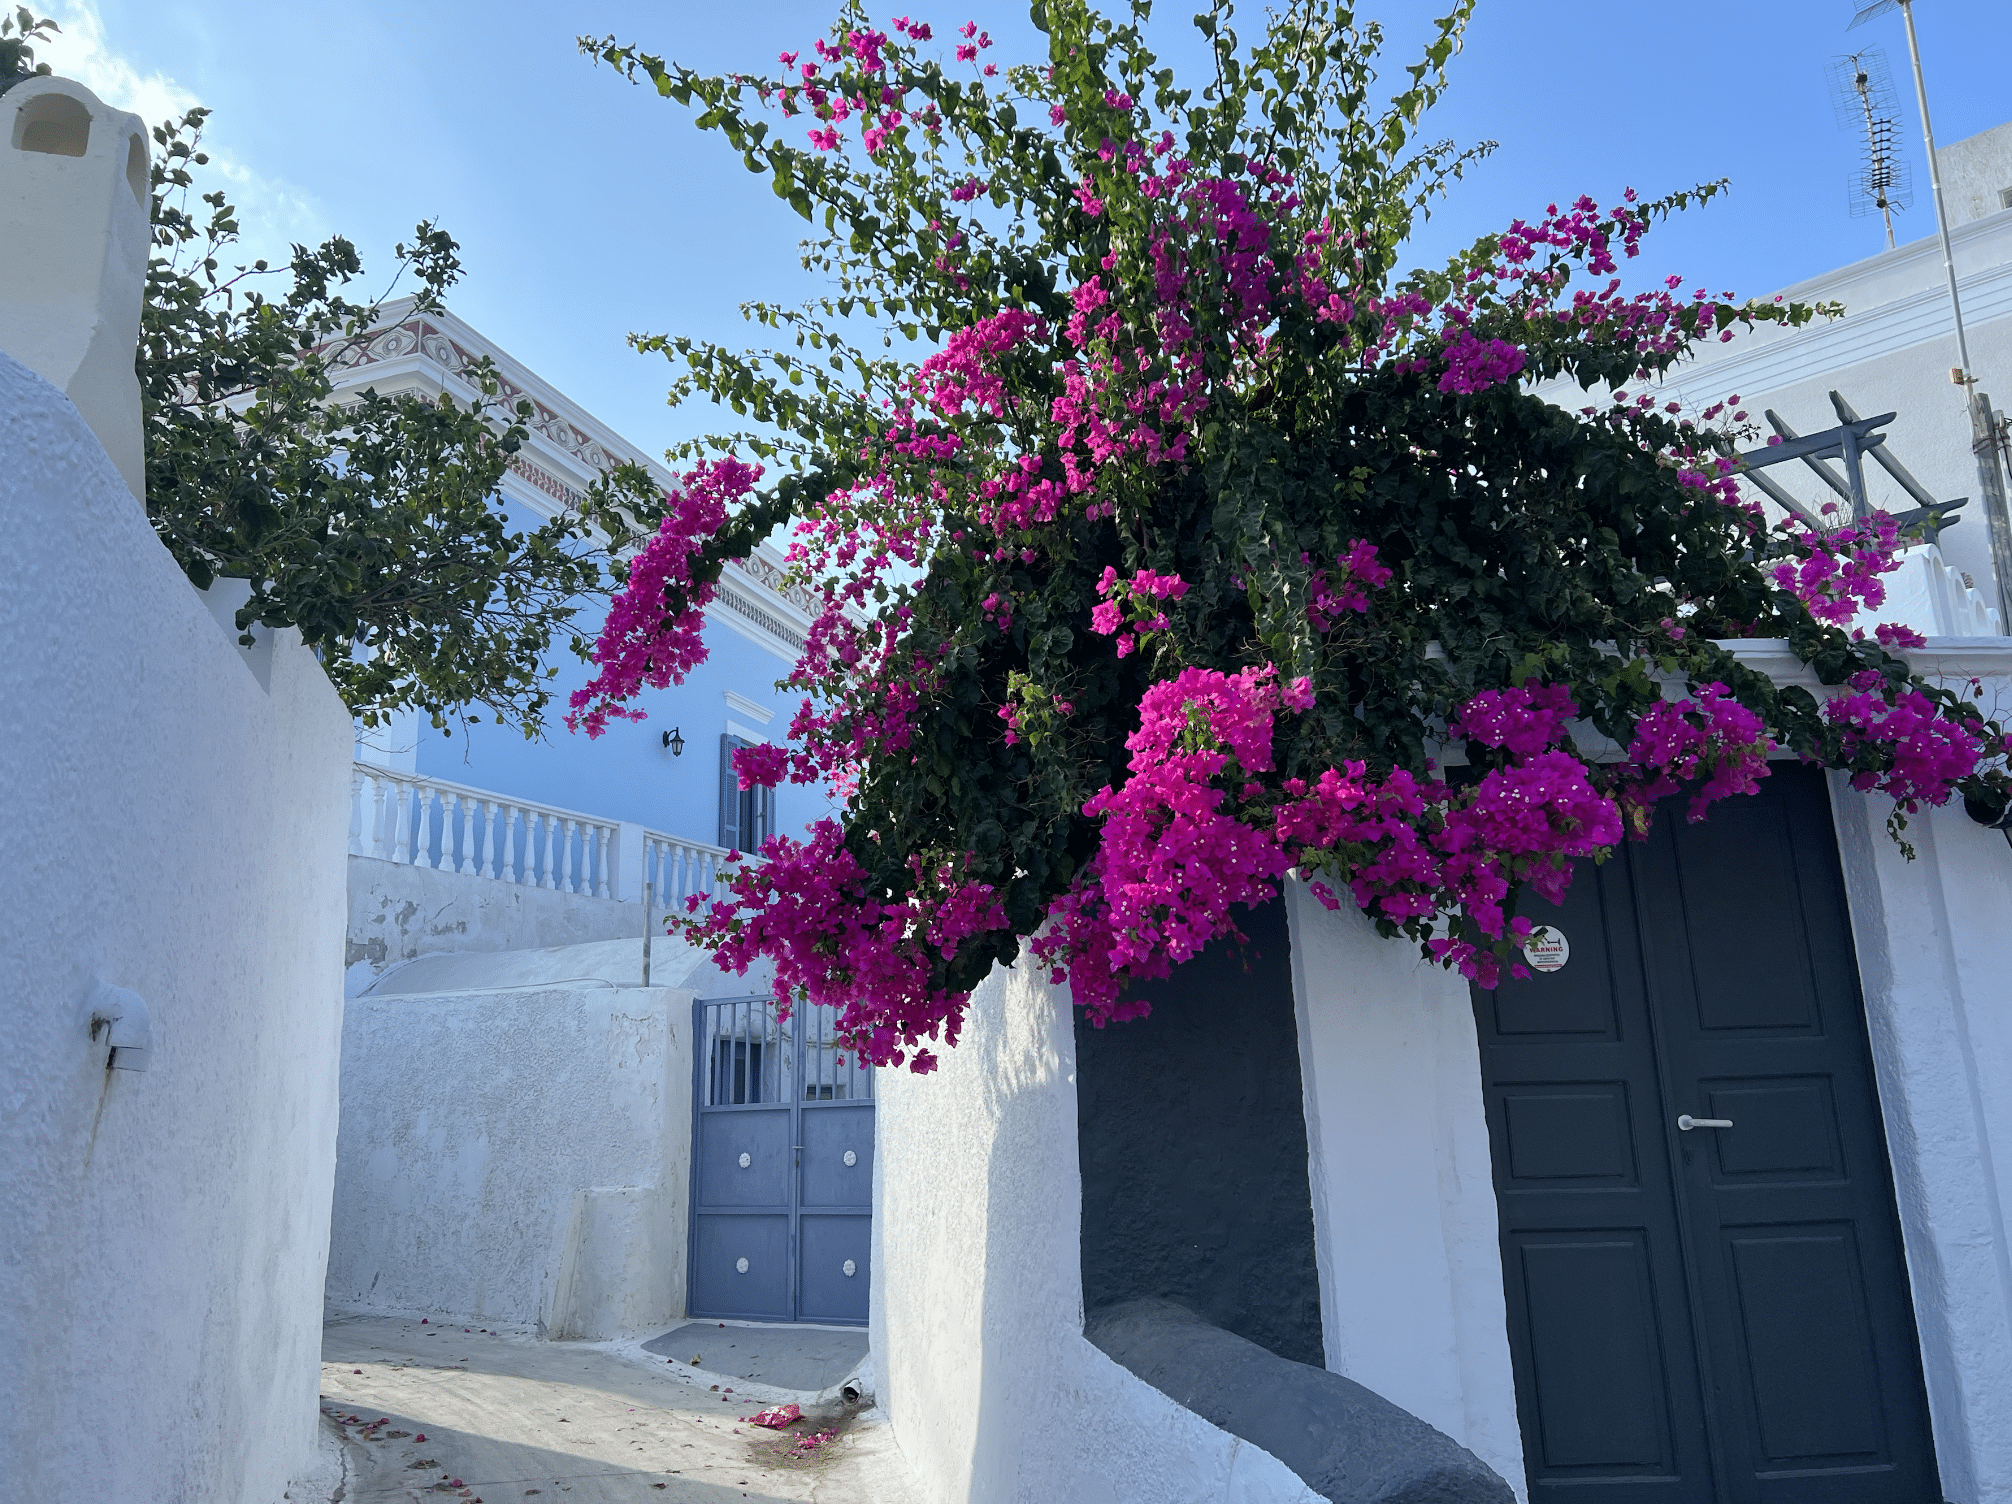 ruelle typique dans le village de karterados a santorin en grece